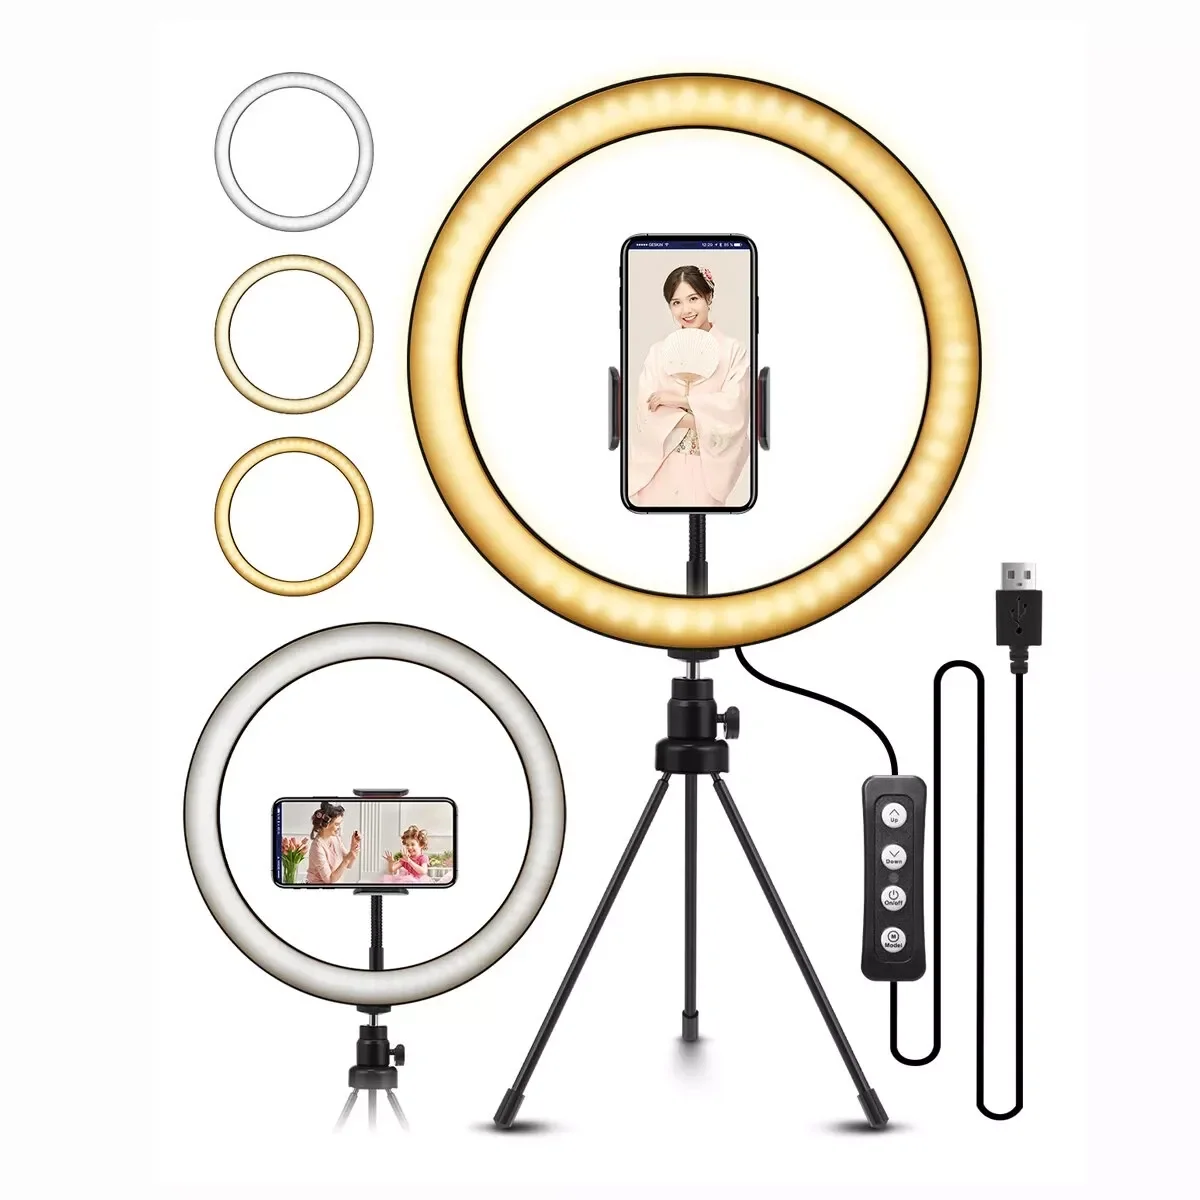 

Светодиодный кольцевой светильник LY 10 дюймов со штативом, лампа для селфи для YouTube, прямых трансляций, макияжа, фотографий